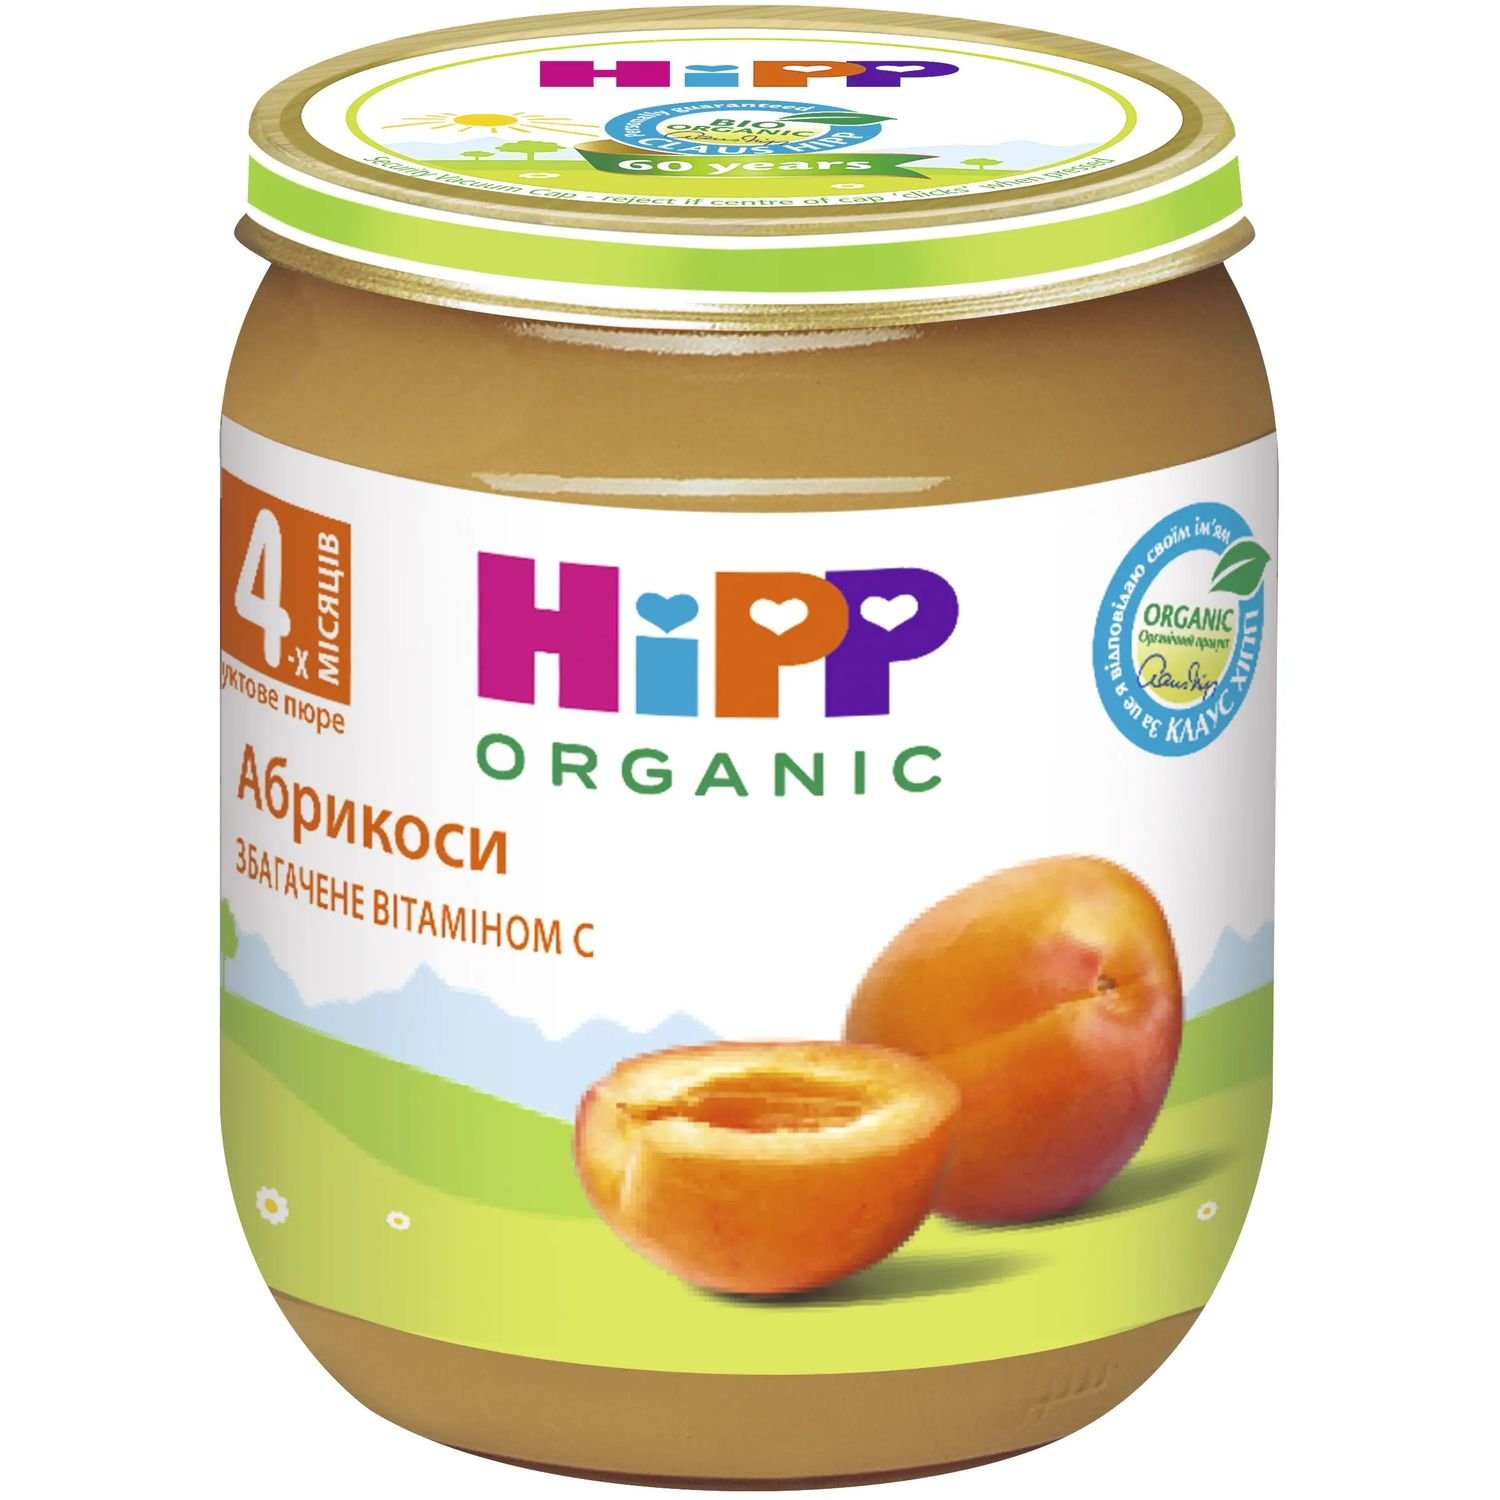 Органическое фруктовое пюре HiPP Абрикосы 125 г - фото 1